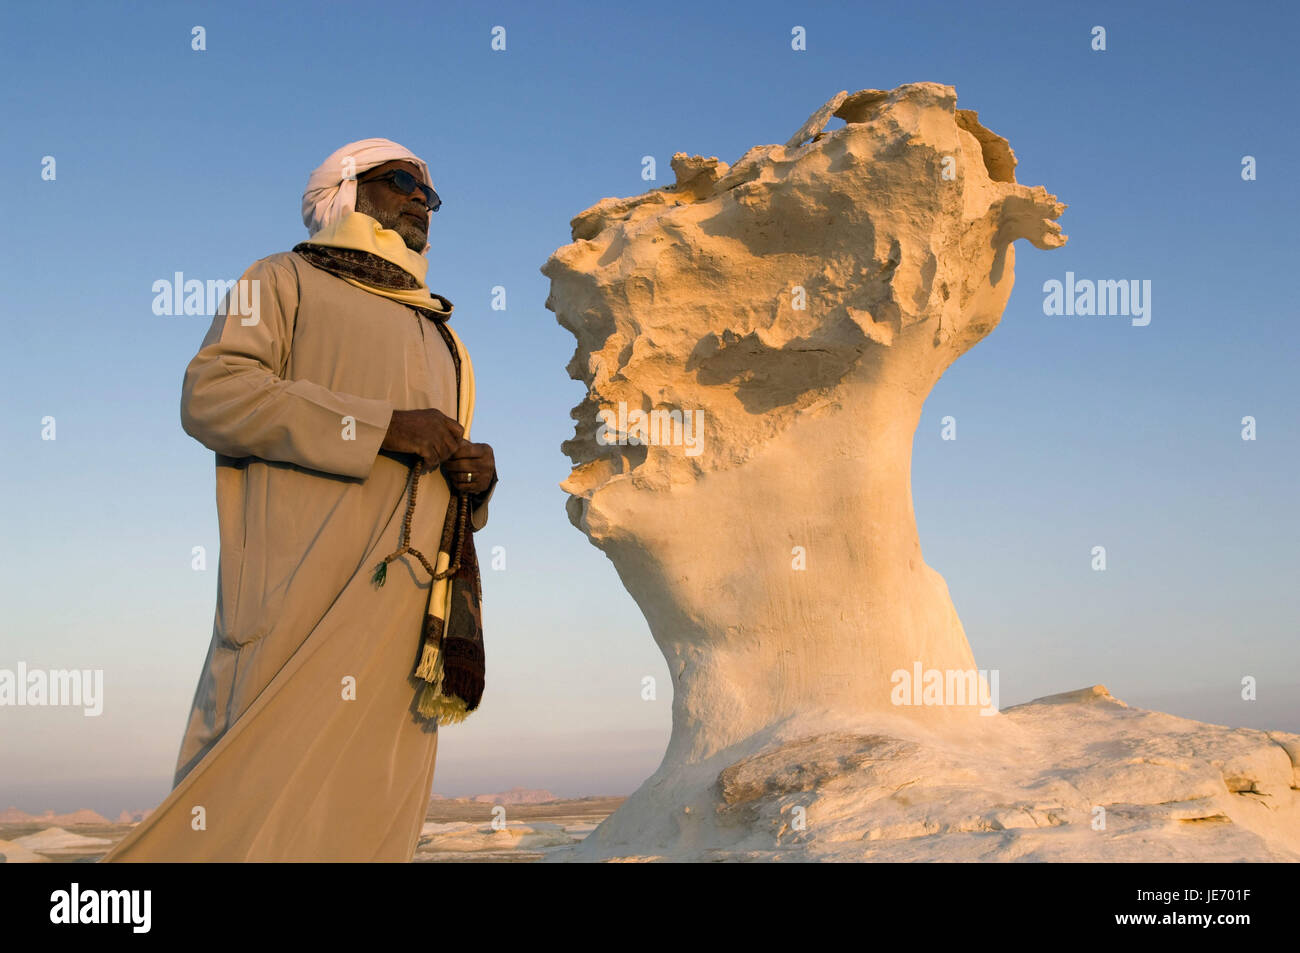 Africa, Egypt, Libyan desert, white desert, local before a stone pillar, Stock Photo